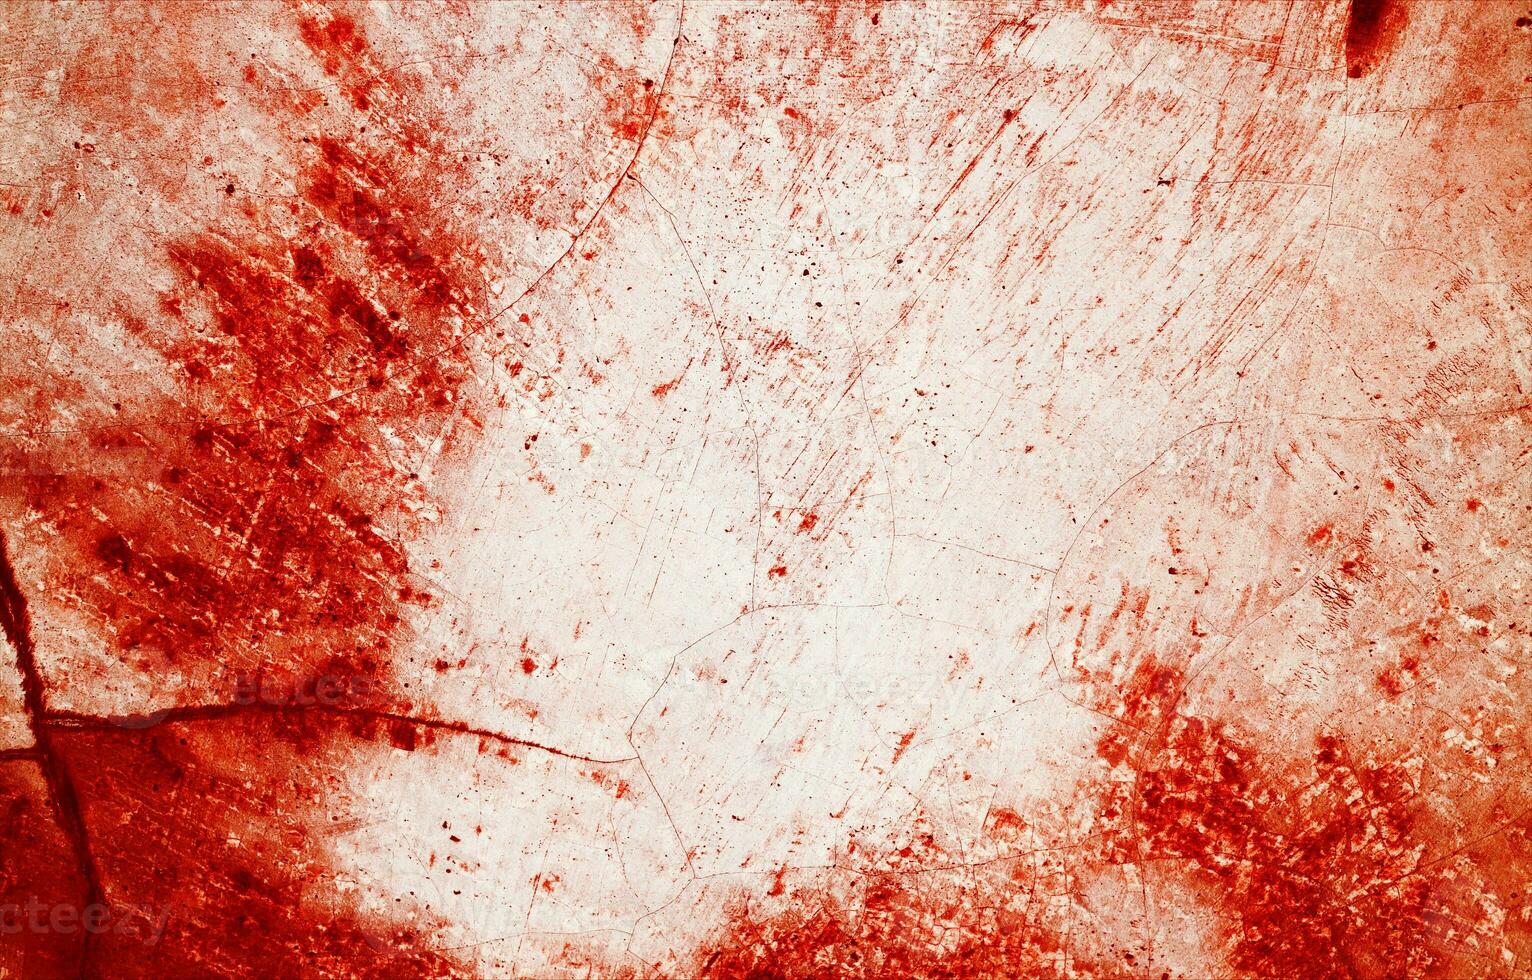 salpicaduras de rojo pintar asemejarse a Fresco sangre, su dentado bordes contribuyendo a un sentido de malestar el manchas, recordativo de Víspera de Todos los Santos horrores foto